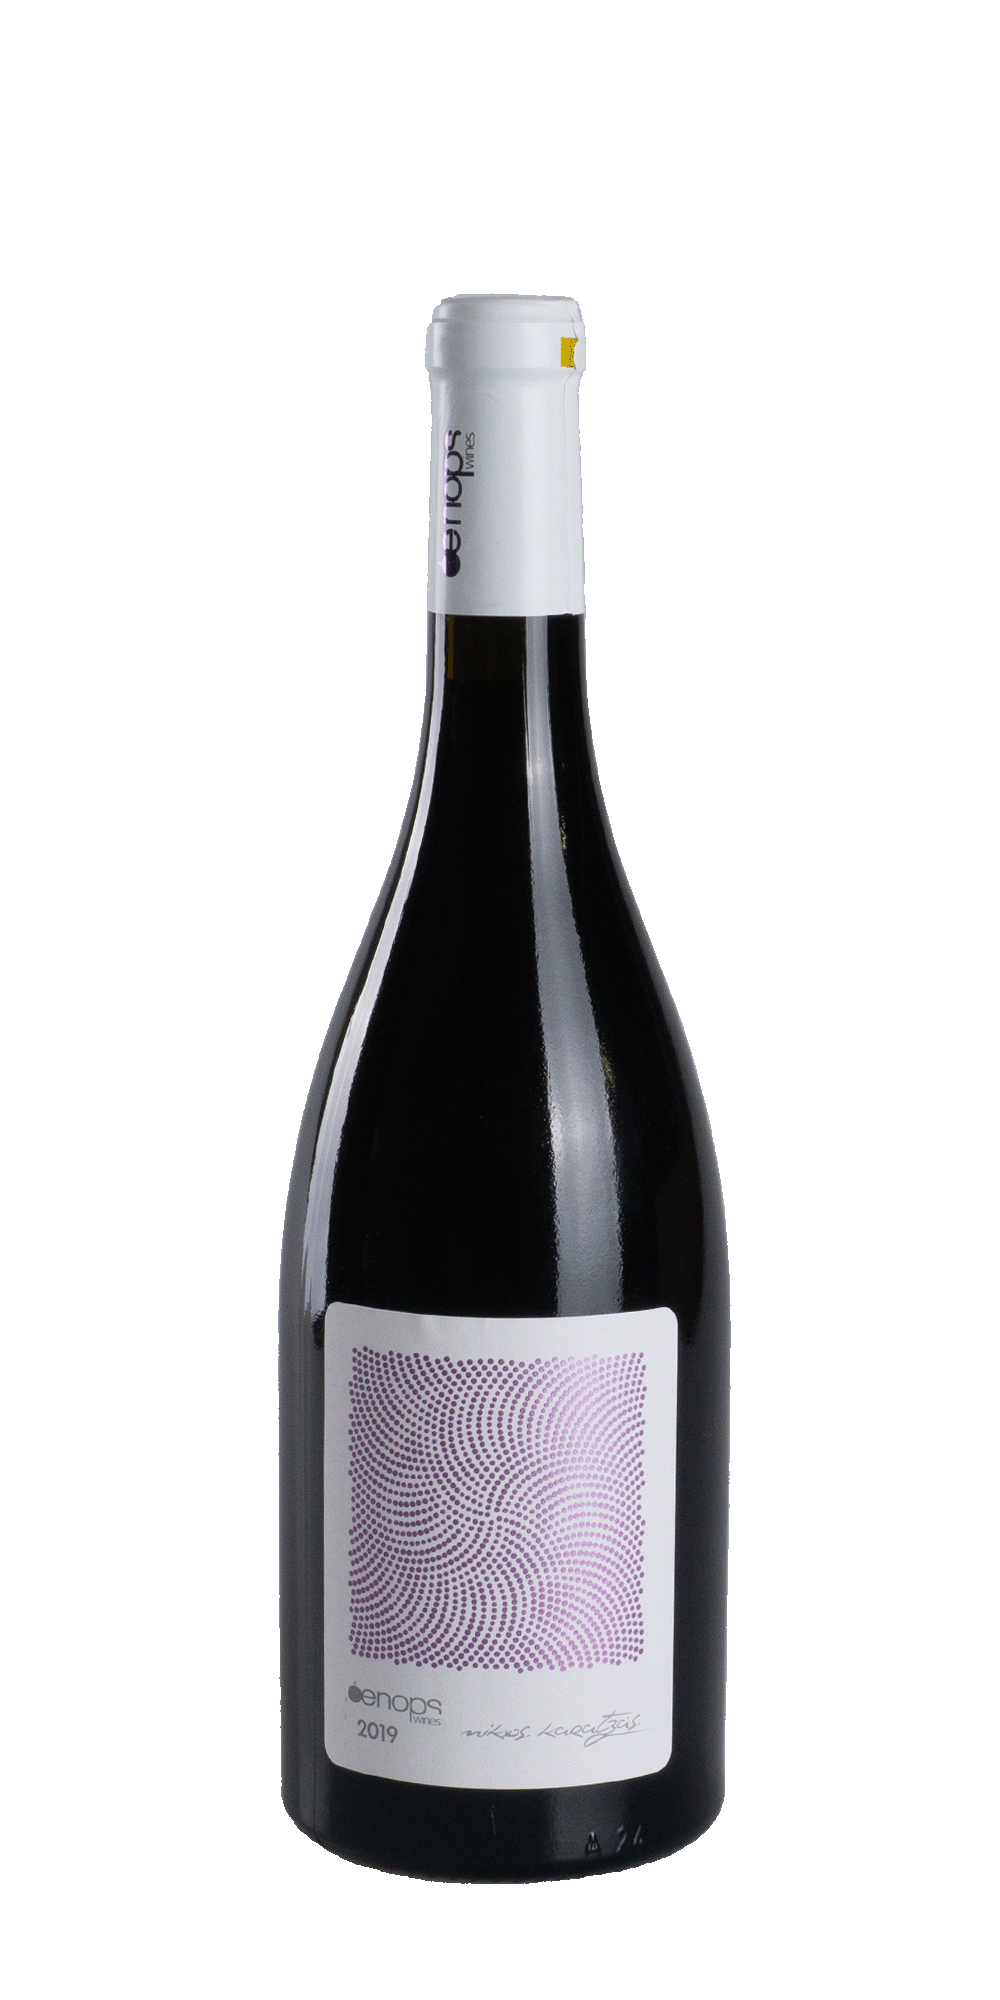 Xinomavro 2020 - Oenops Wines